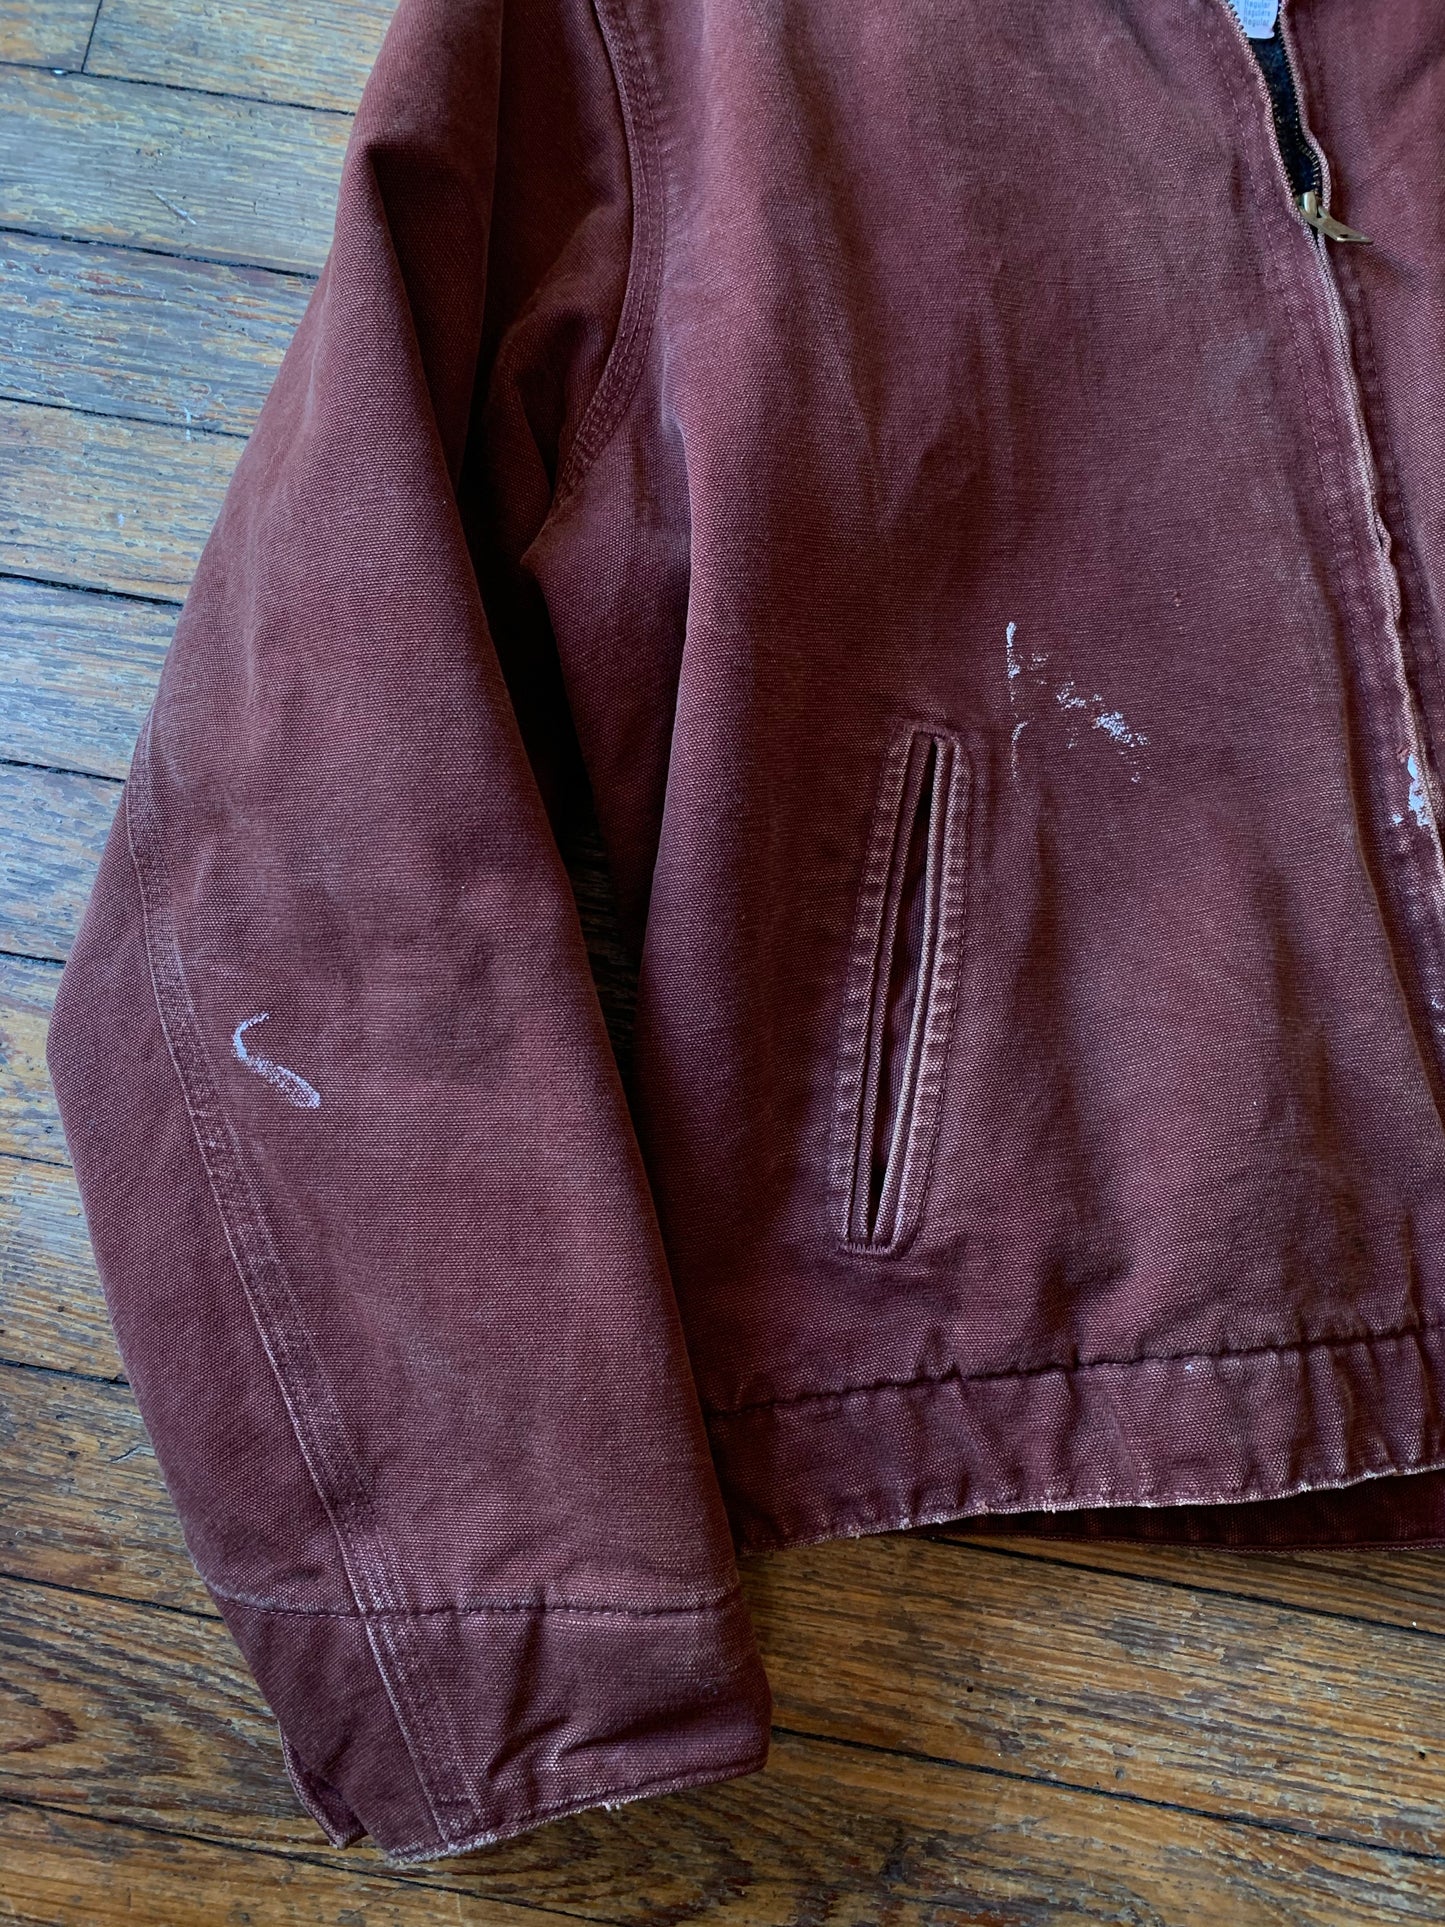 Pre-Loved Rusty Brown Carhartt Zip-Up Utility Jacket